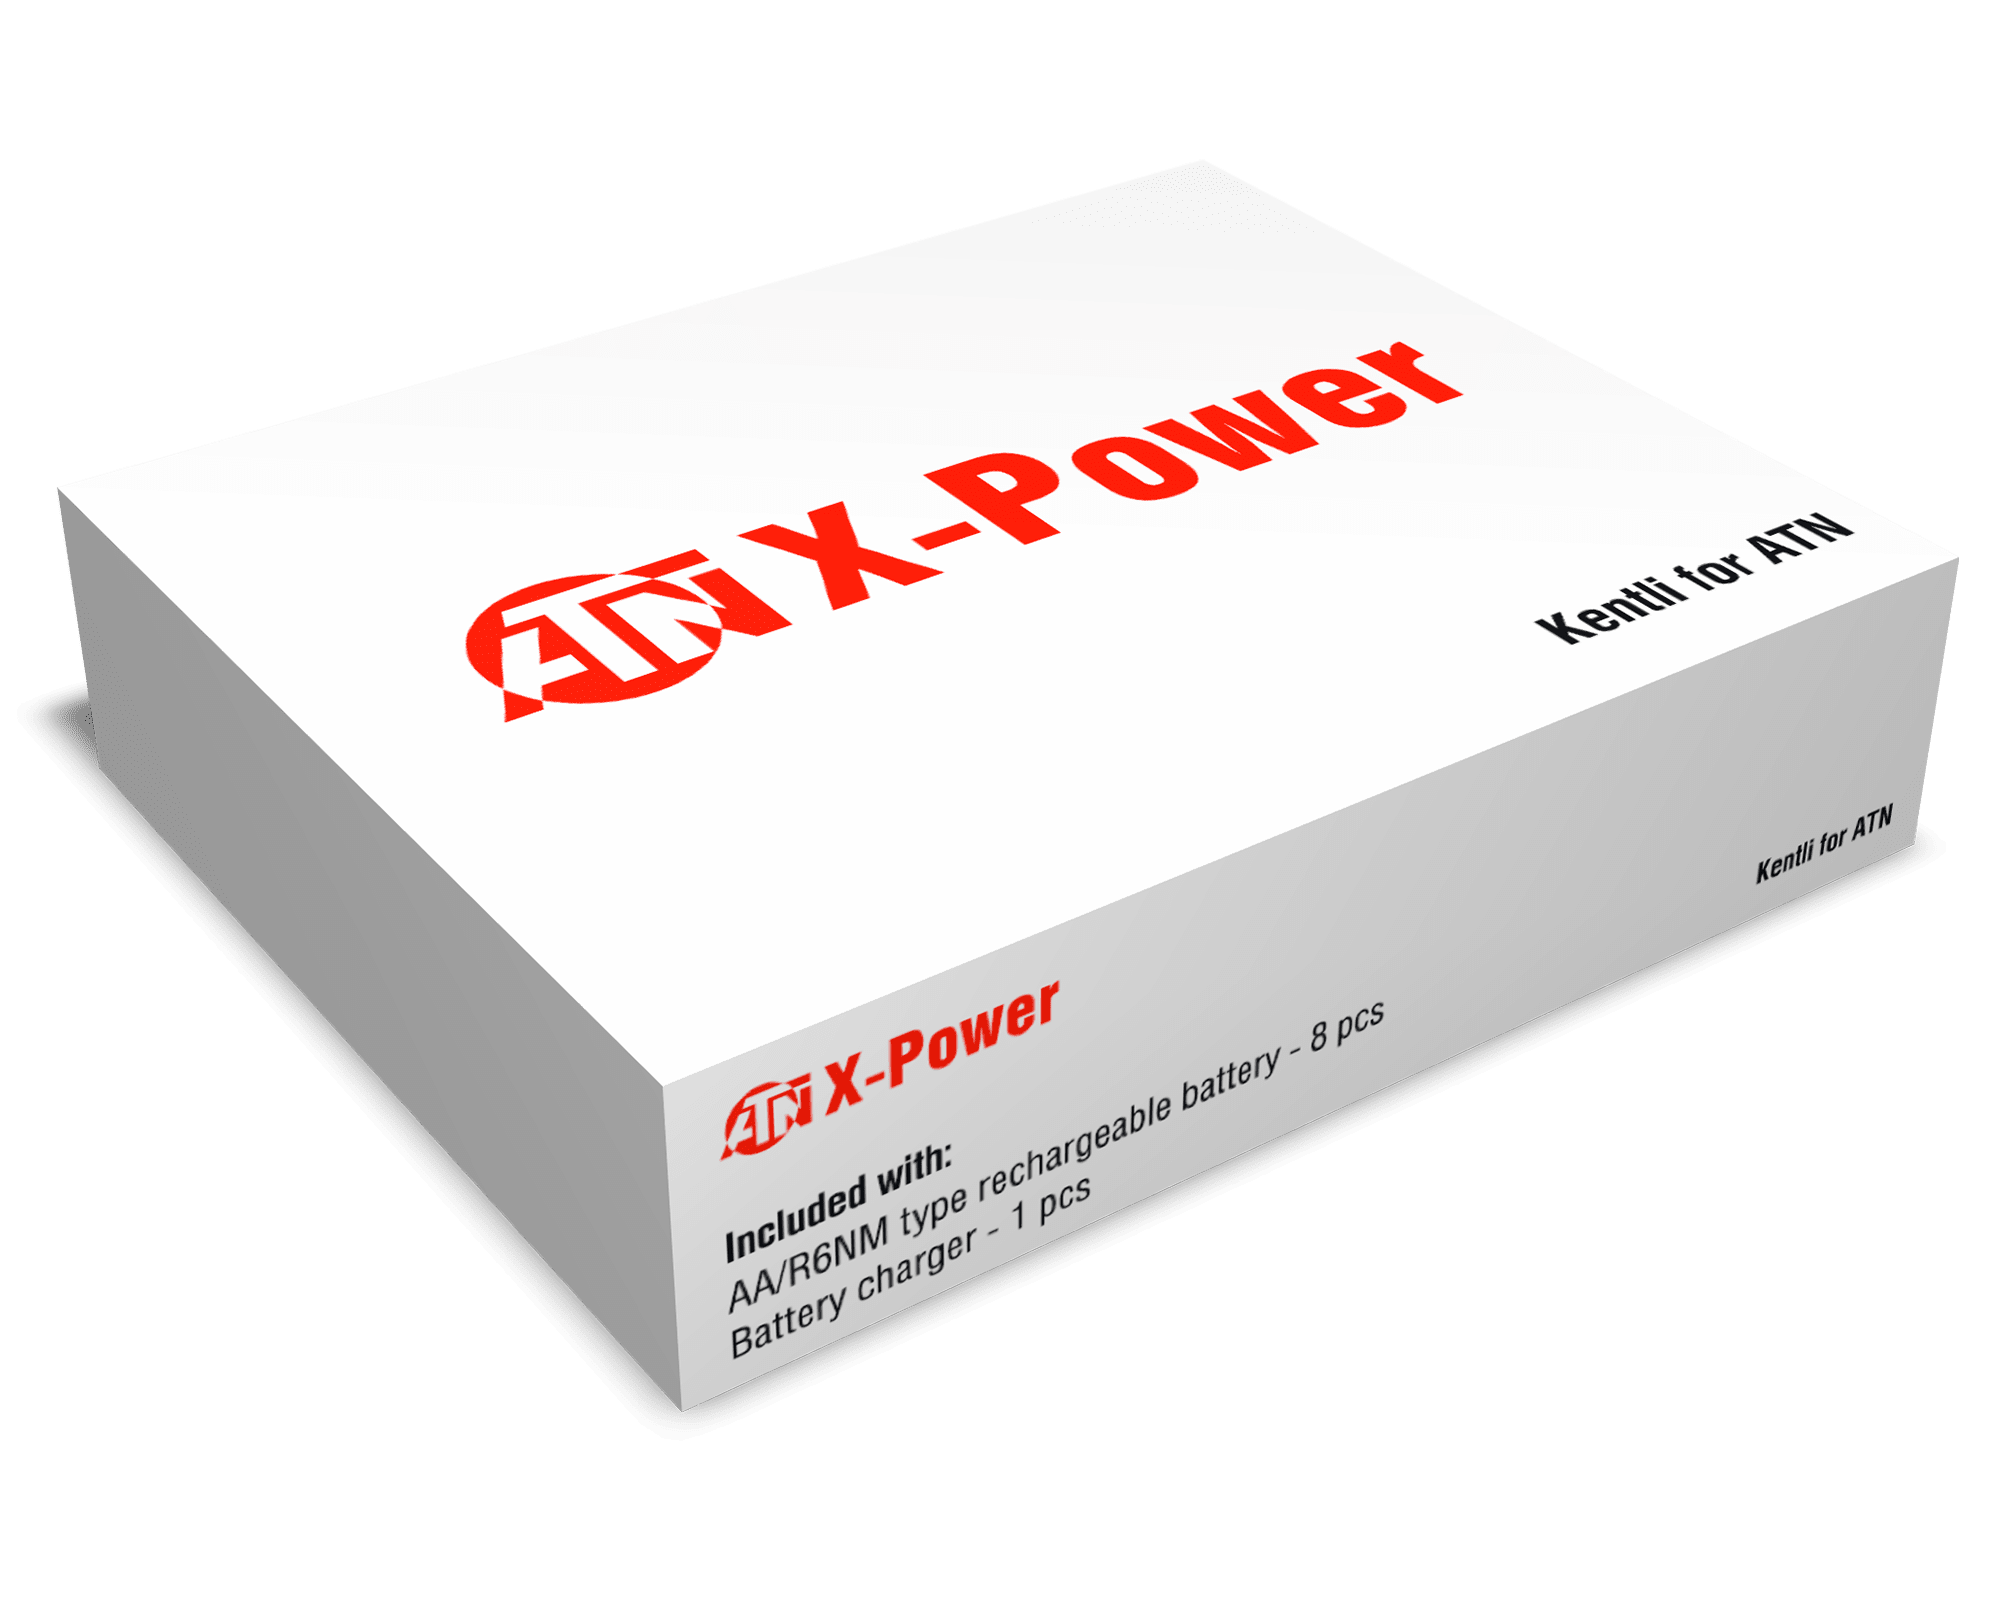 ATN Rechargeble Battery Kentli USB Charger